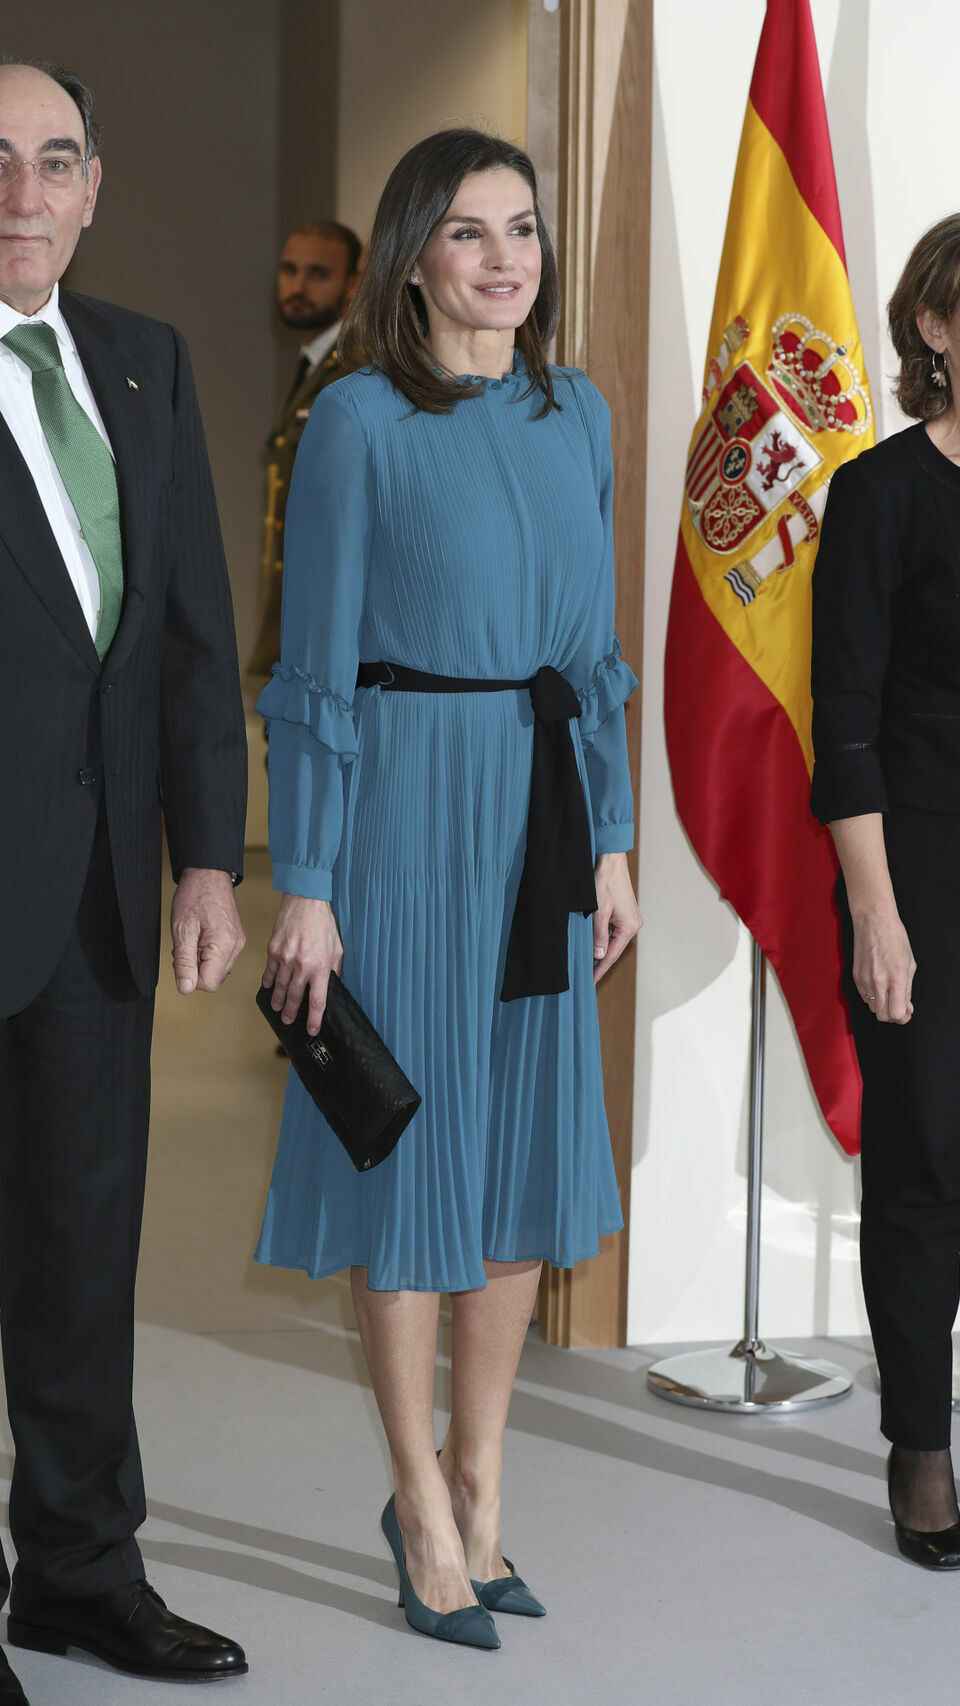 El presidente de Iberdrola José Ignacio Sánchez Galán y la reina Letizia con bolso modelo Letizia.